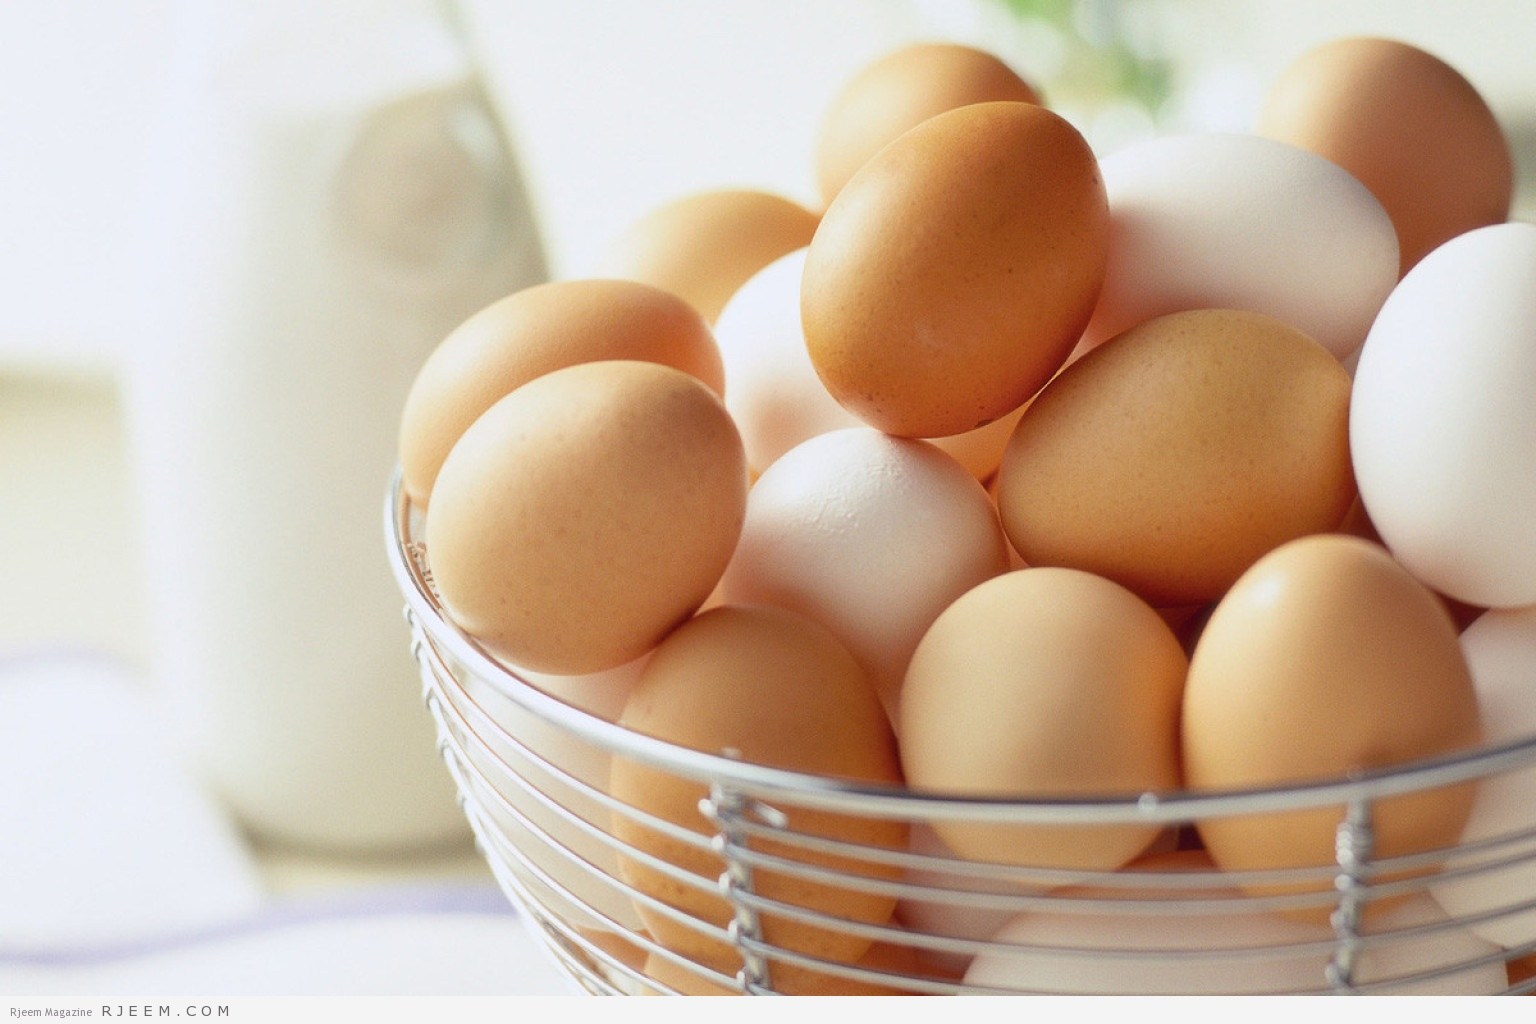 فوائد ماسك البيض للعناية بالبشرة في فصل الصيف